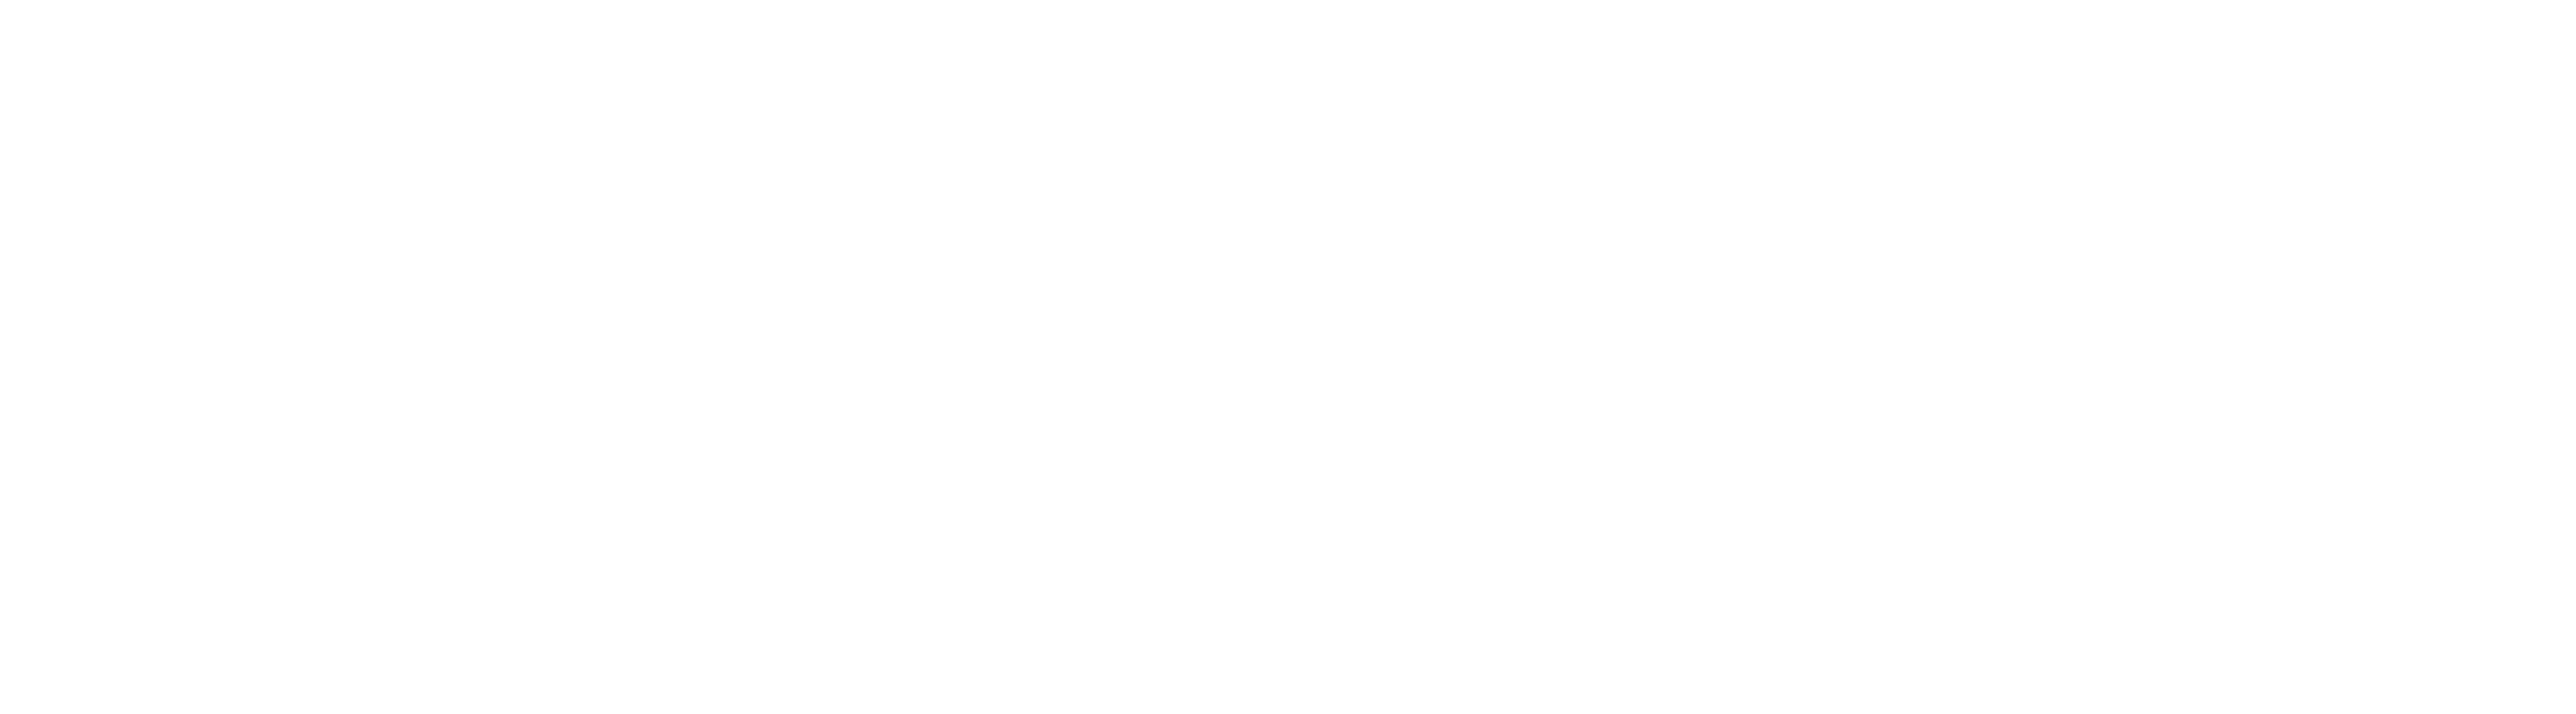 Islamic Sharia Council Logo - White